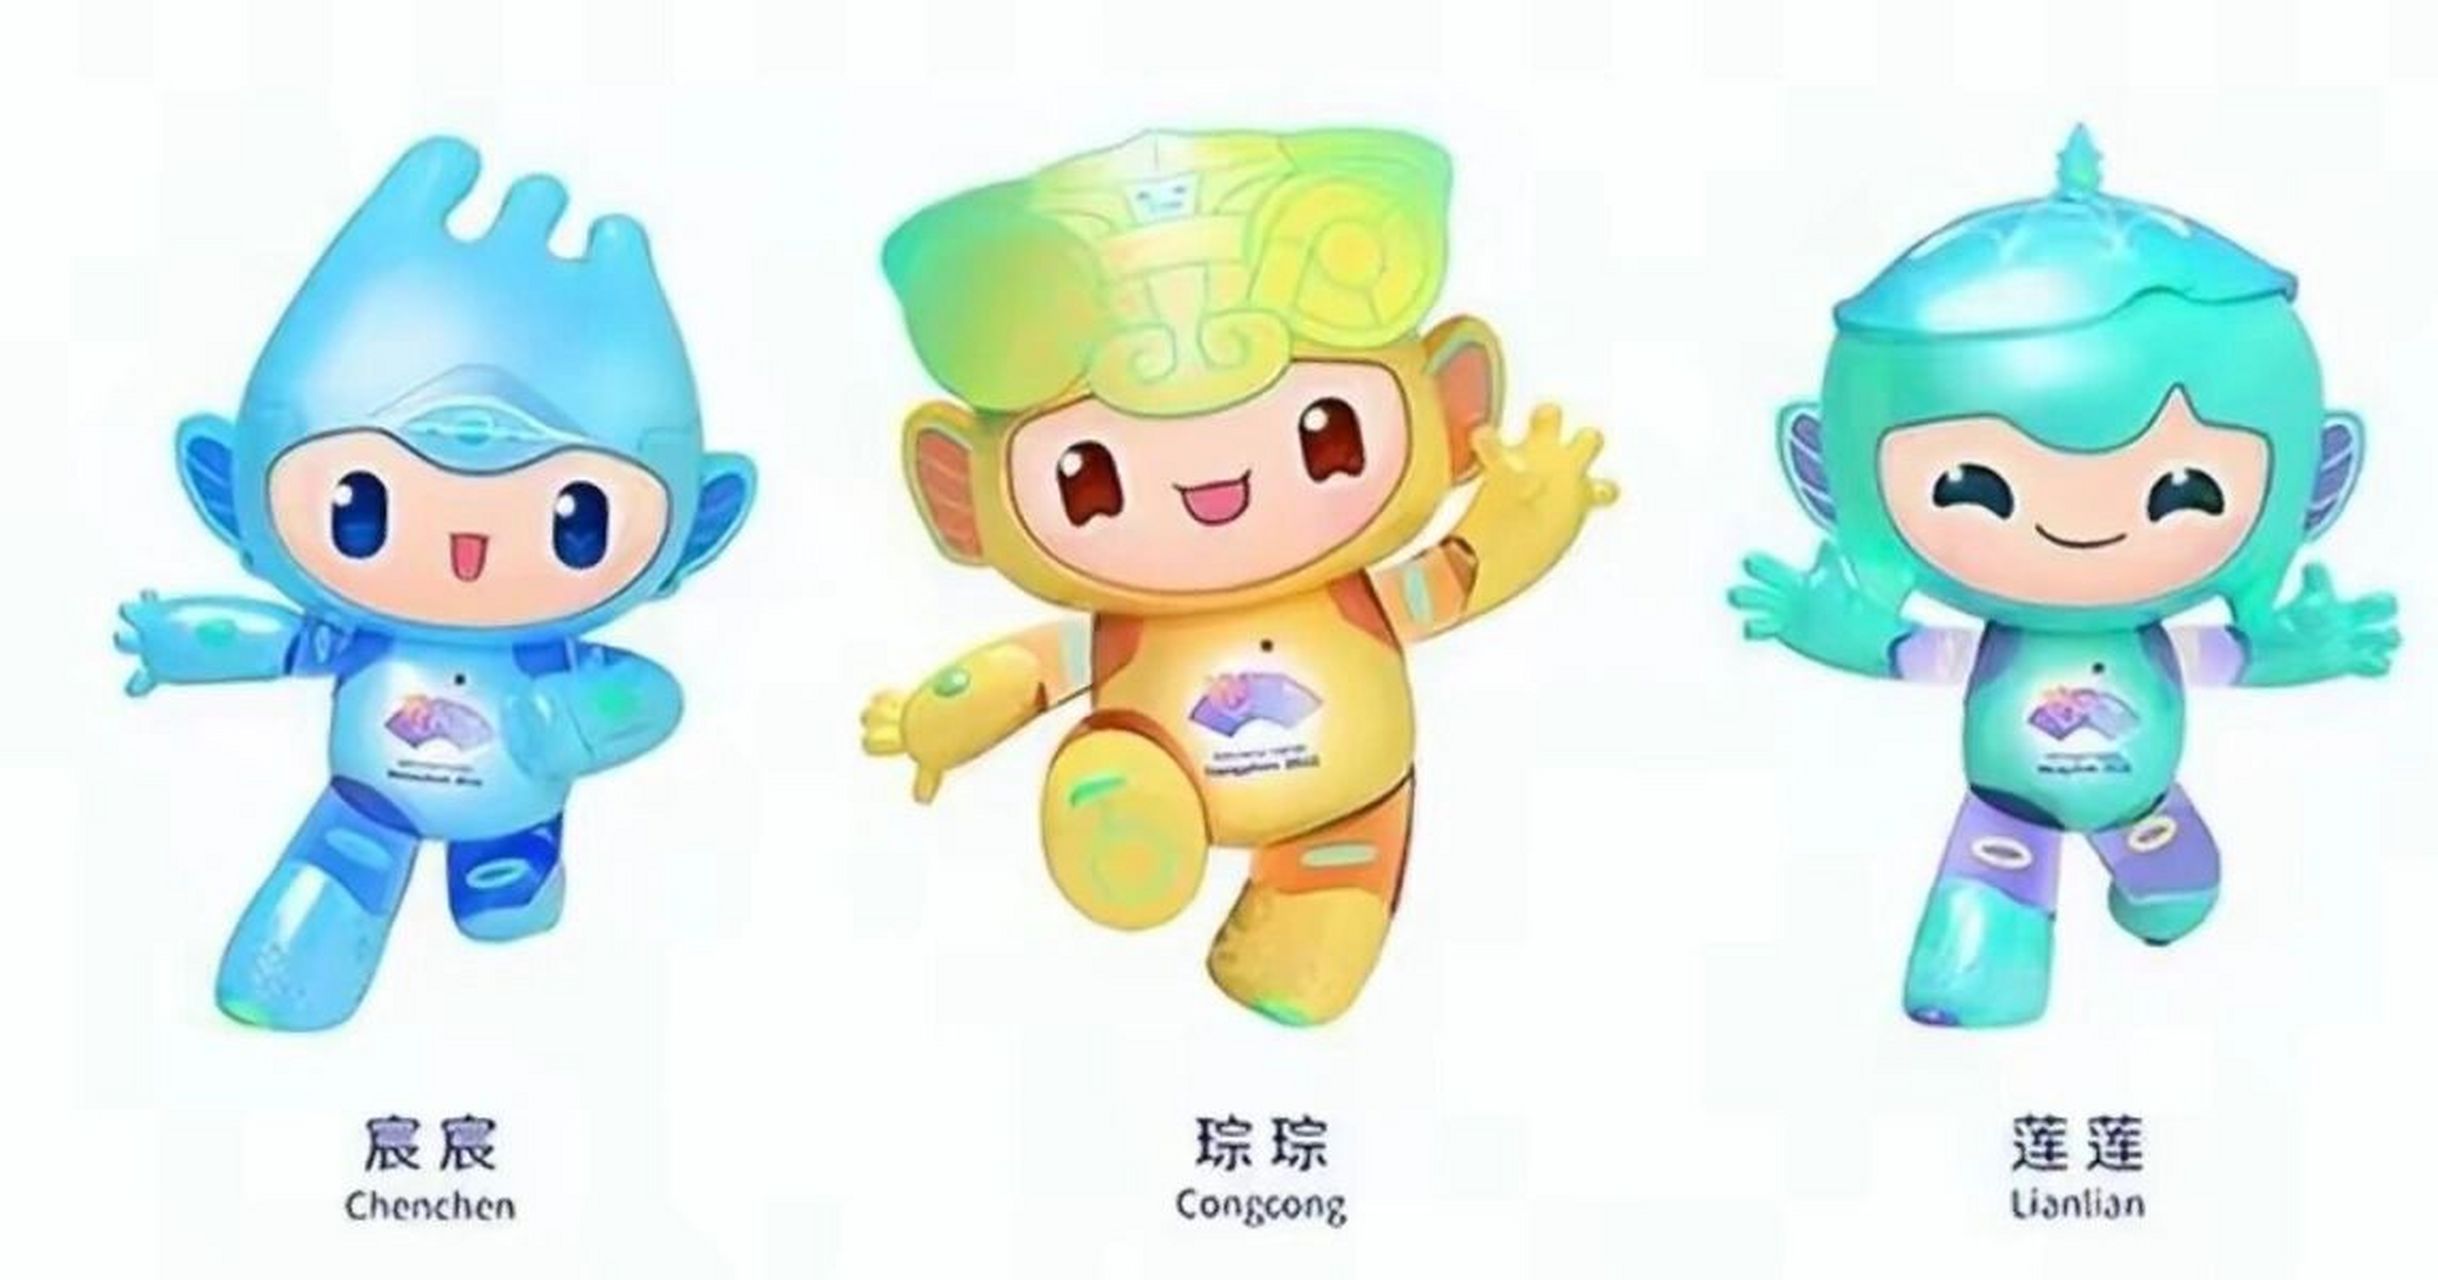 杭州亚运会的三个福娃你都认识吗?